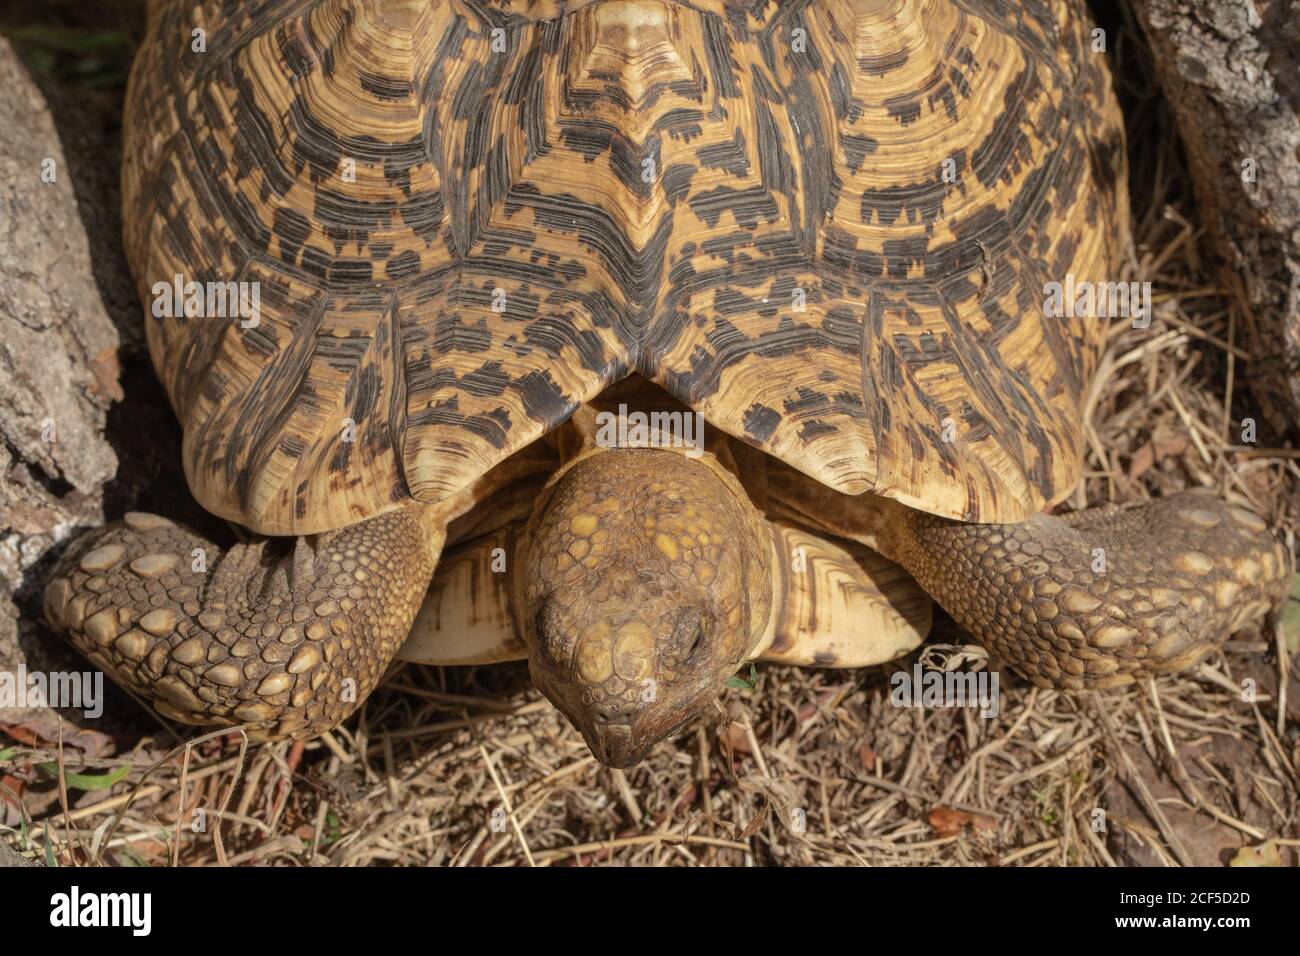 Leopardschildkröte (Stigmochelys pardalis). Dorsale Ansicht von Karapasse, Muschel, Scheulen, Wachstumsringen, Markierungen, Vorderbeinen, Kopf, aber kein Nackenschrubbe Stockfoto